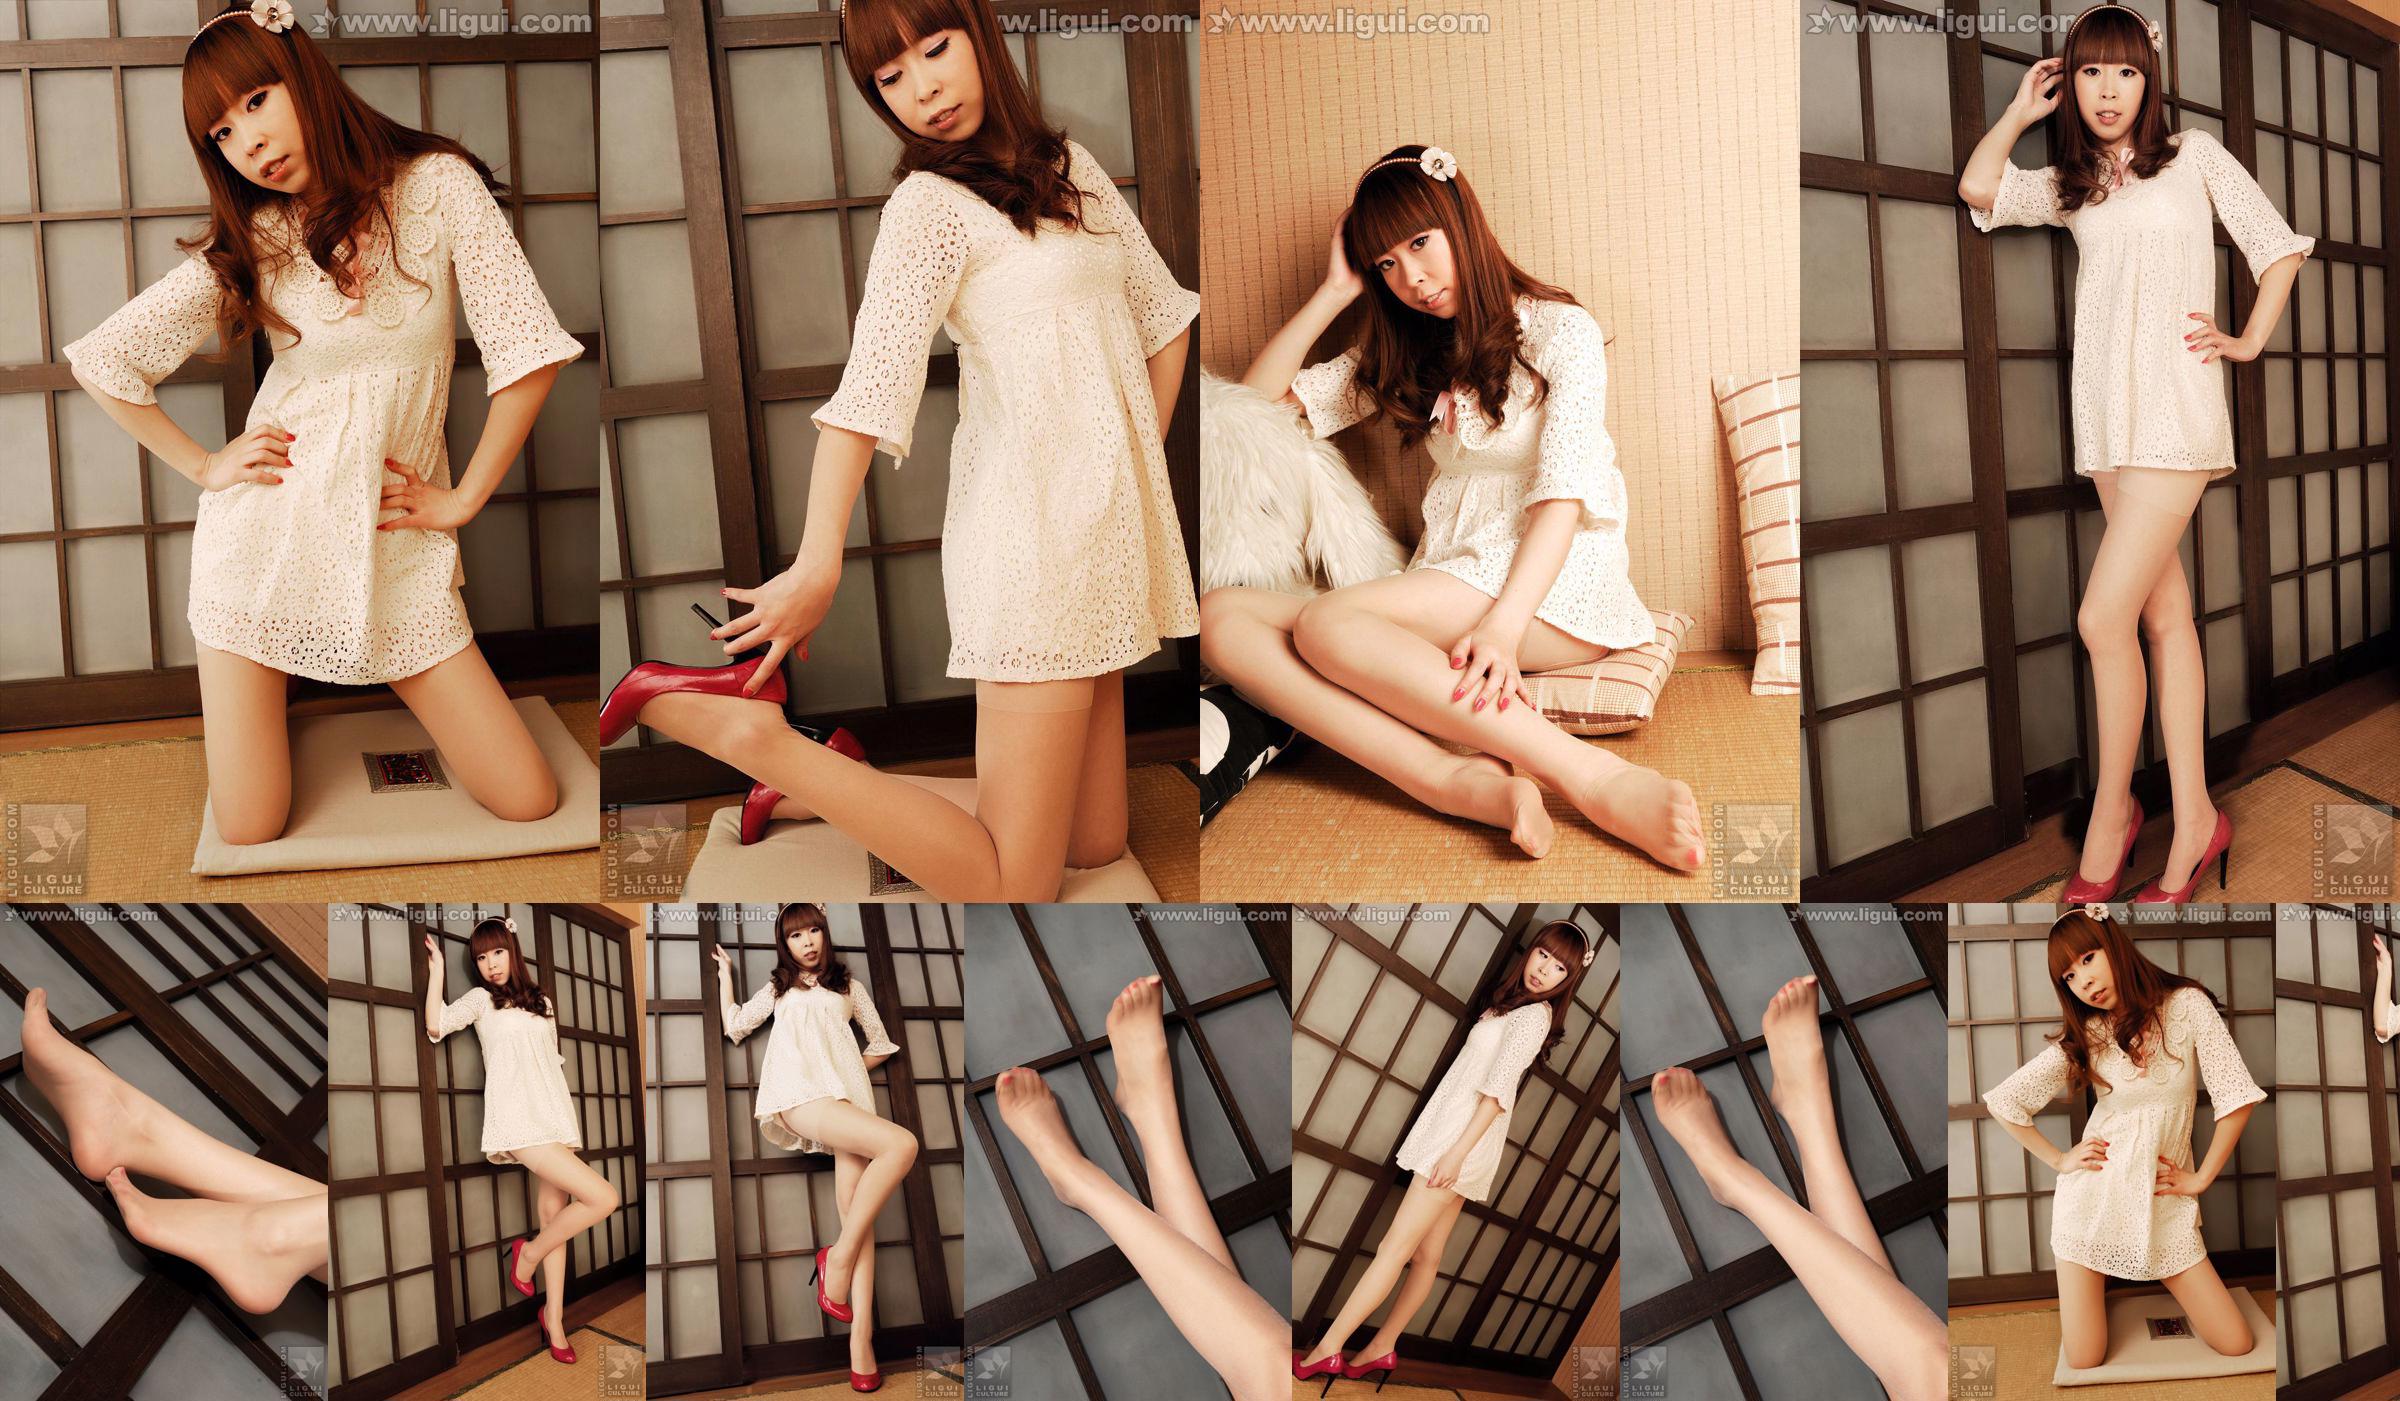 Modell Vikcy "Die Versuchung des japanischen Stils" [丽 柜 LiGui] Schöne Beine und Jadefuß Foto Bild No.351577 Seite 2